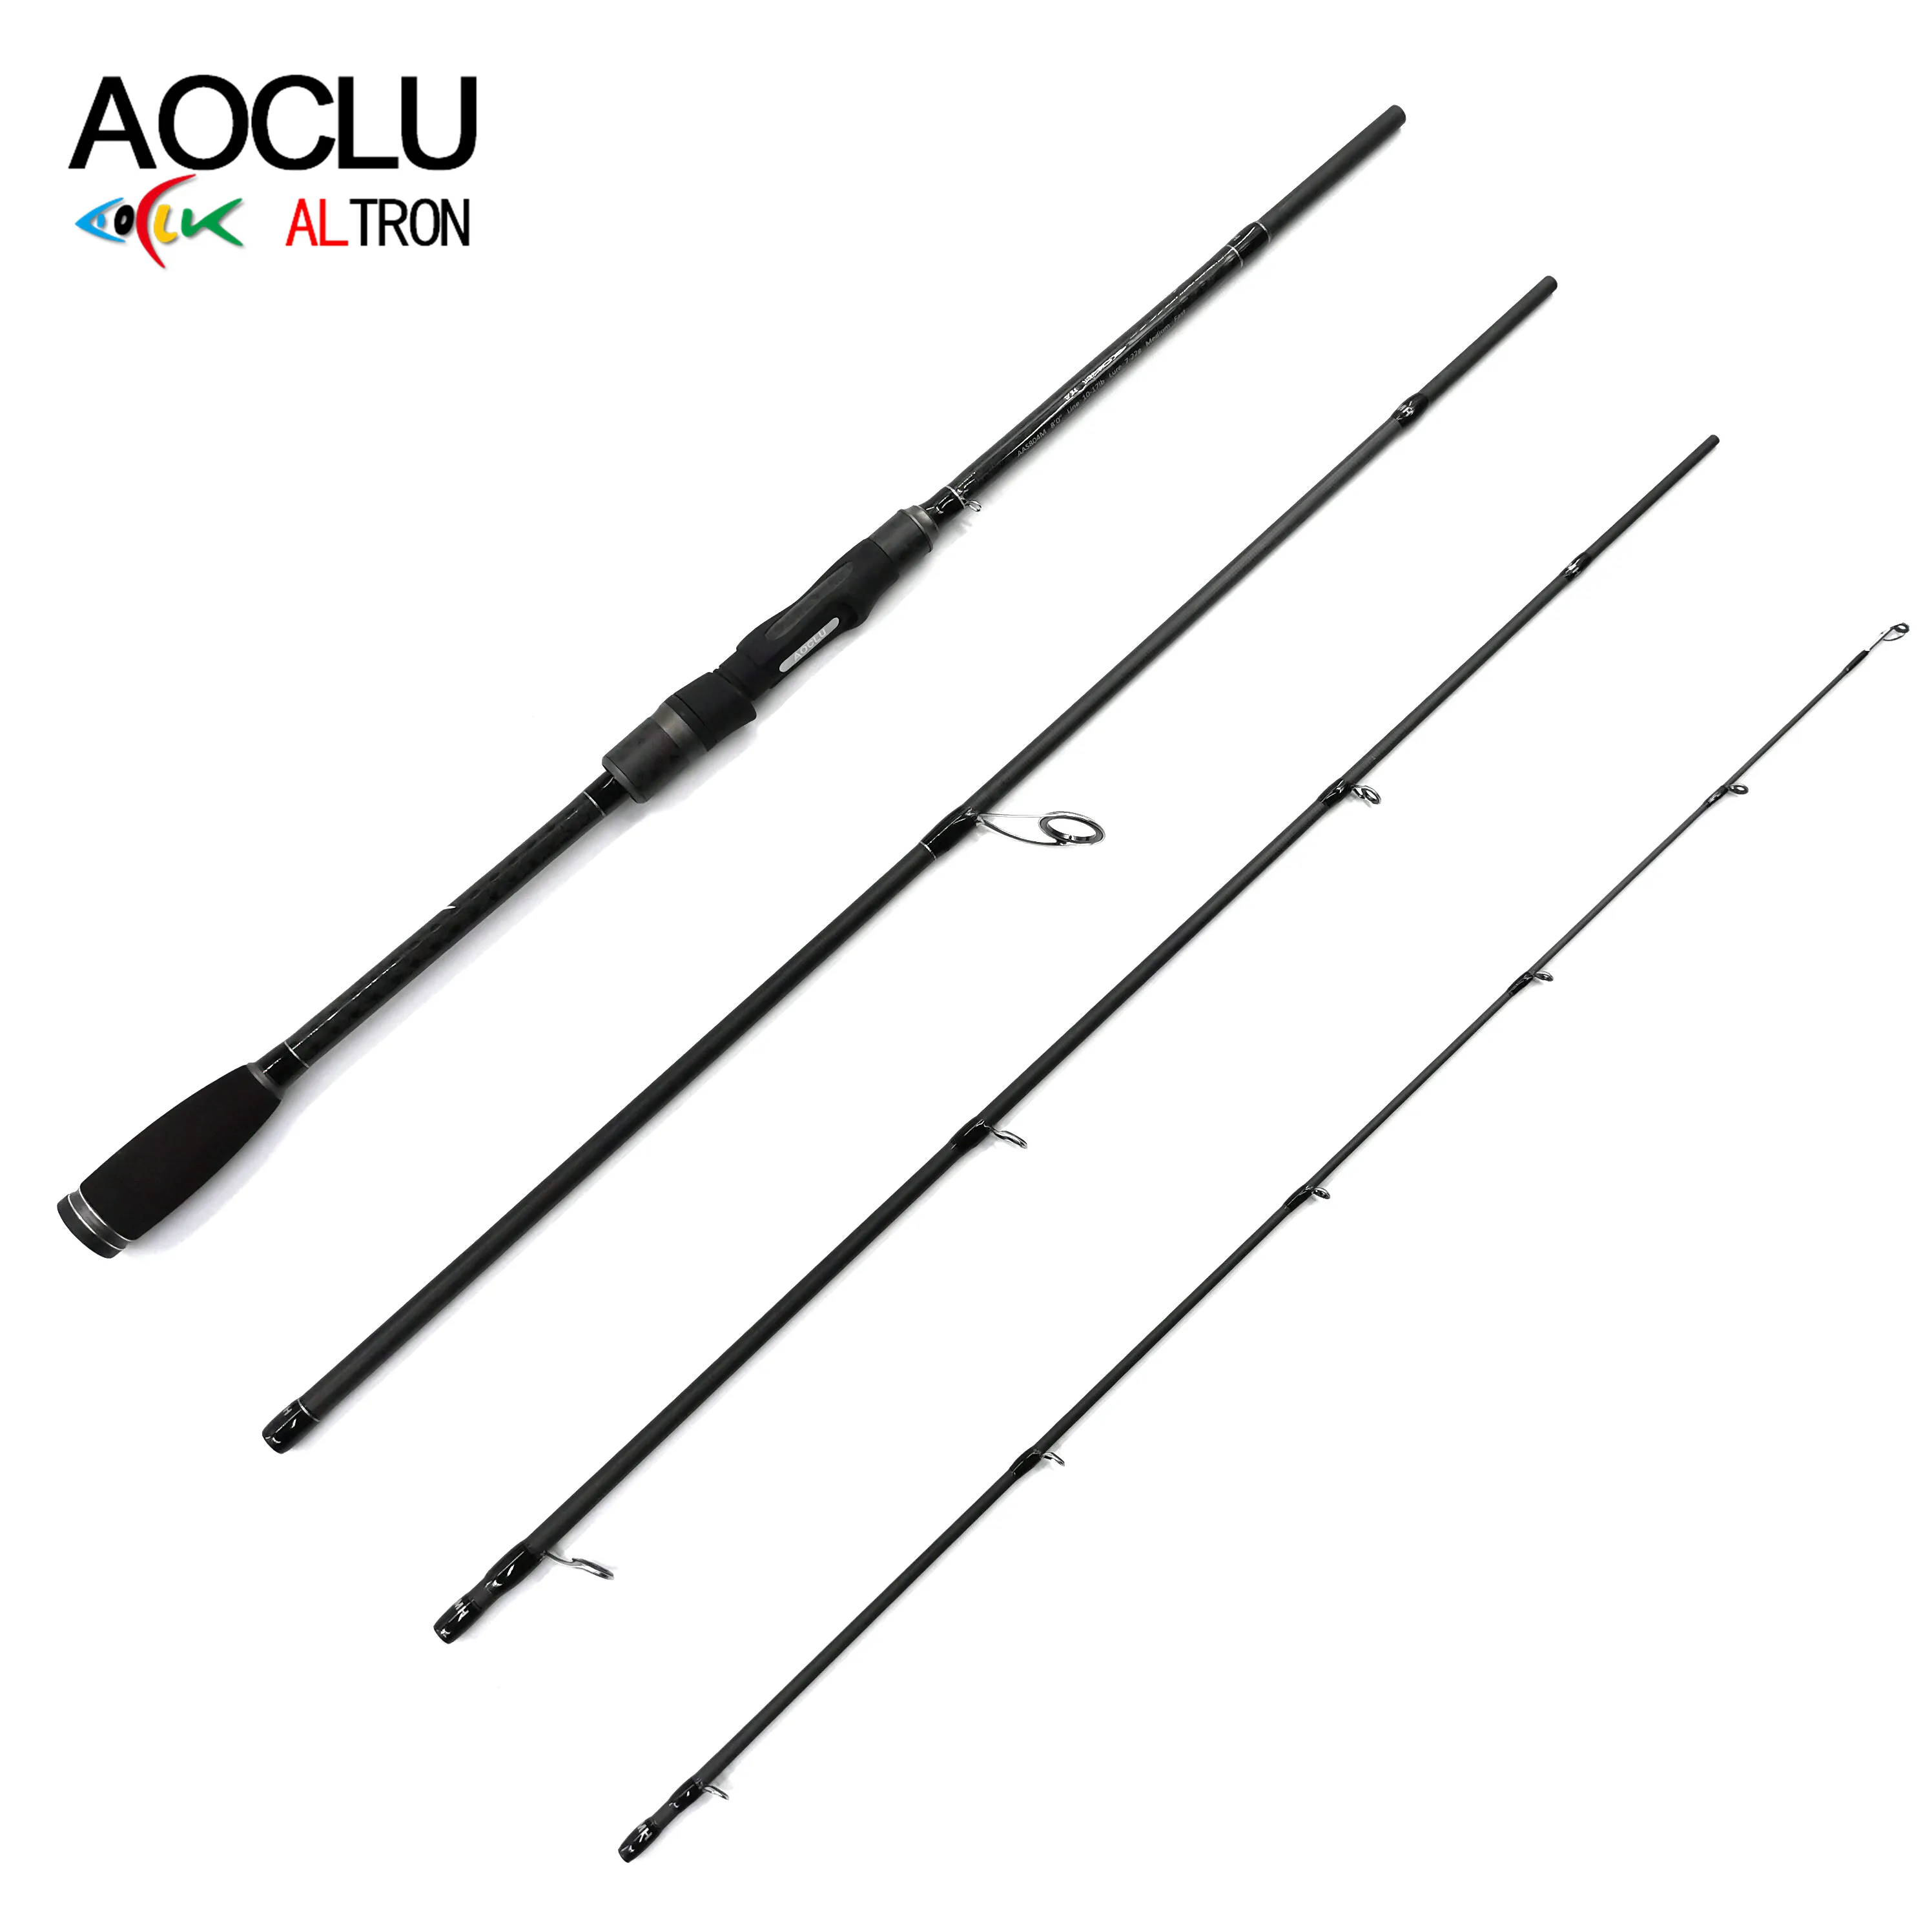 AOCLU Qualifizierte Angelrute Light Bait casting Style IM7 100% 30T Carbon 4PC Spinning und 8 '& 7'6 "Versand bereit